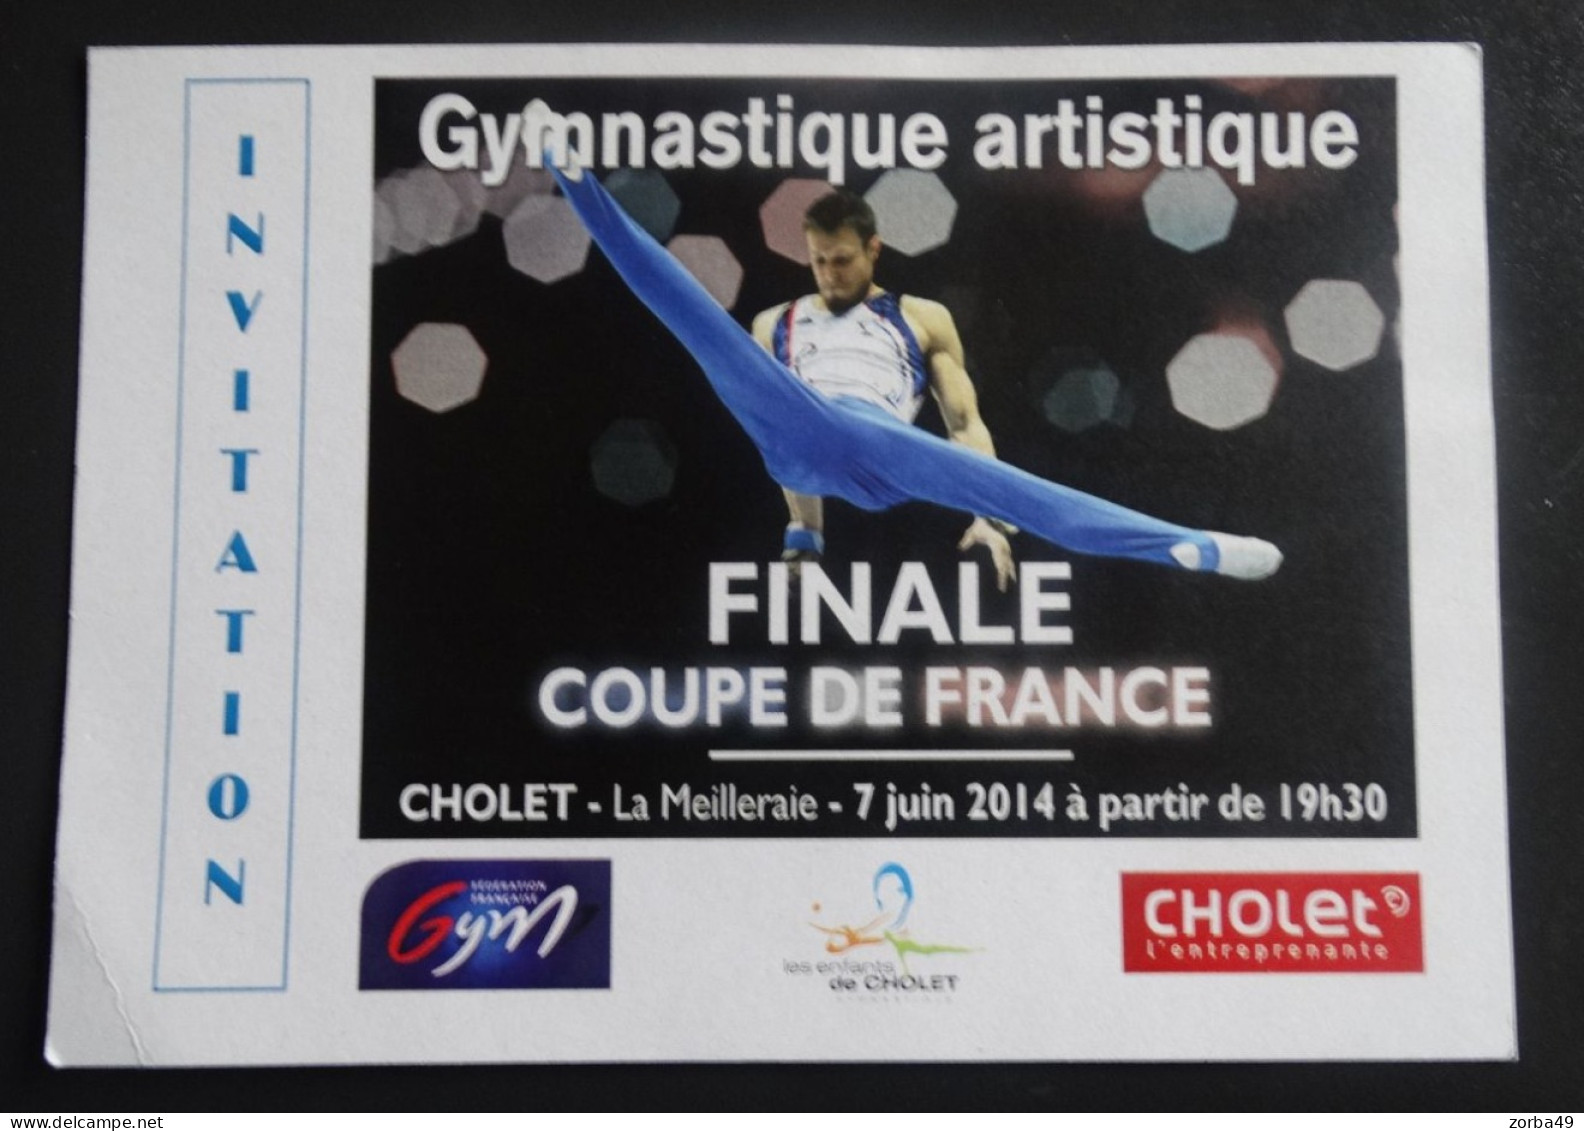 CHOLET Invitation Finale Coupe De France De Gymnastique Artistique 2014 - Gymnastik